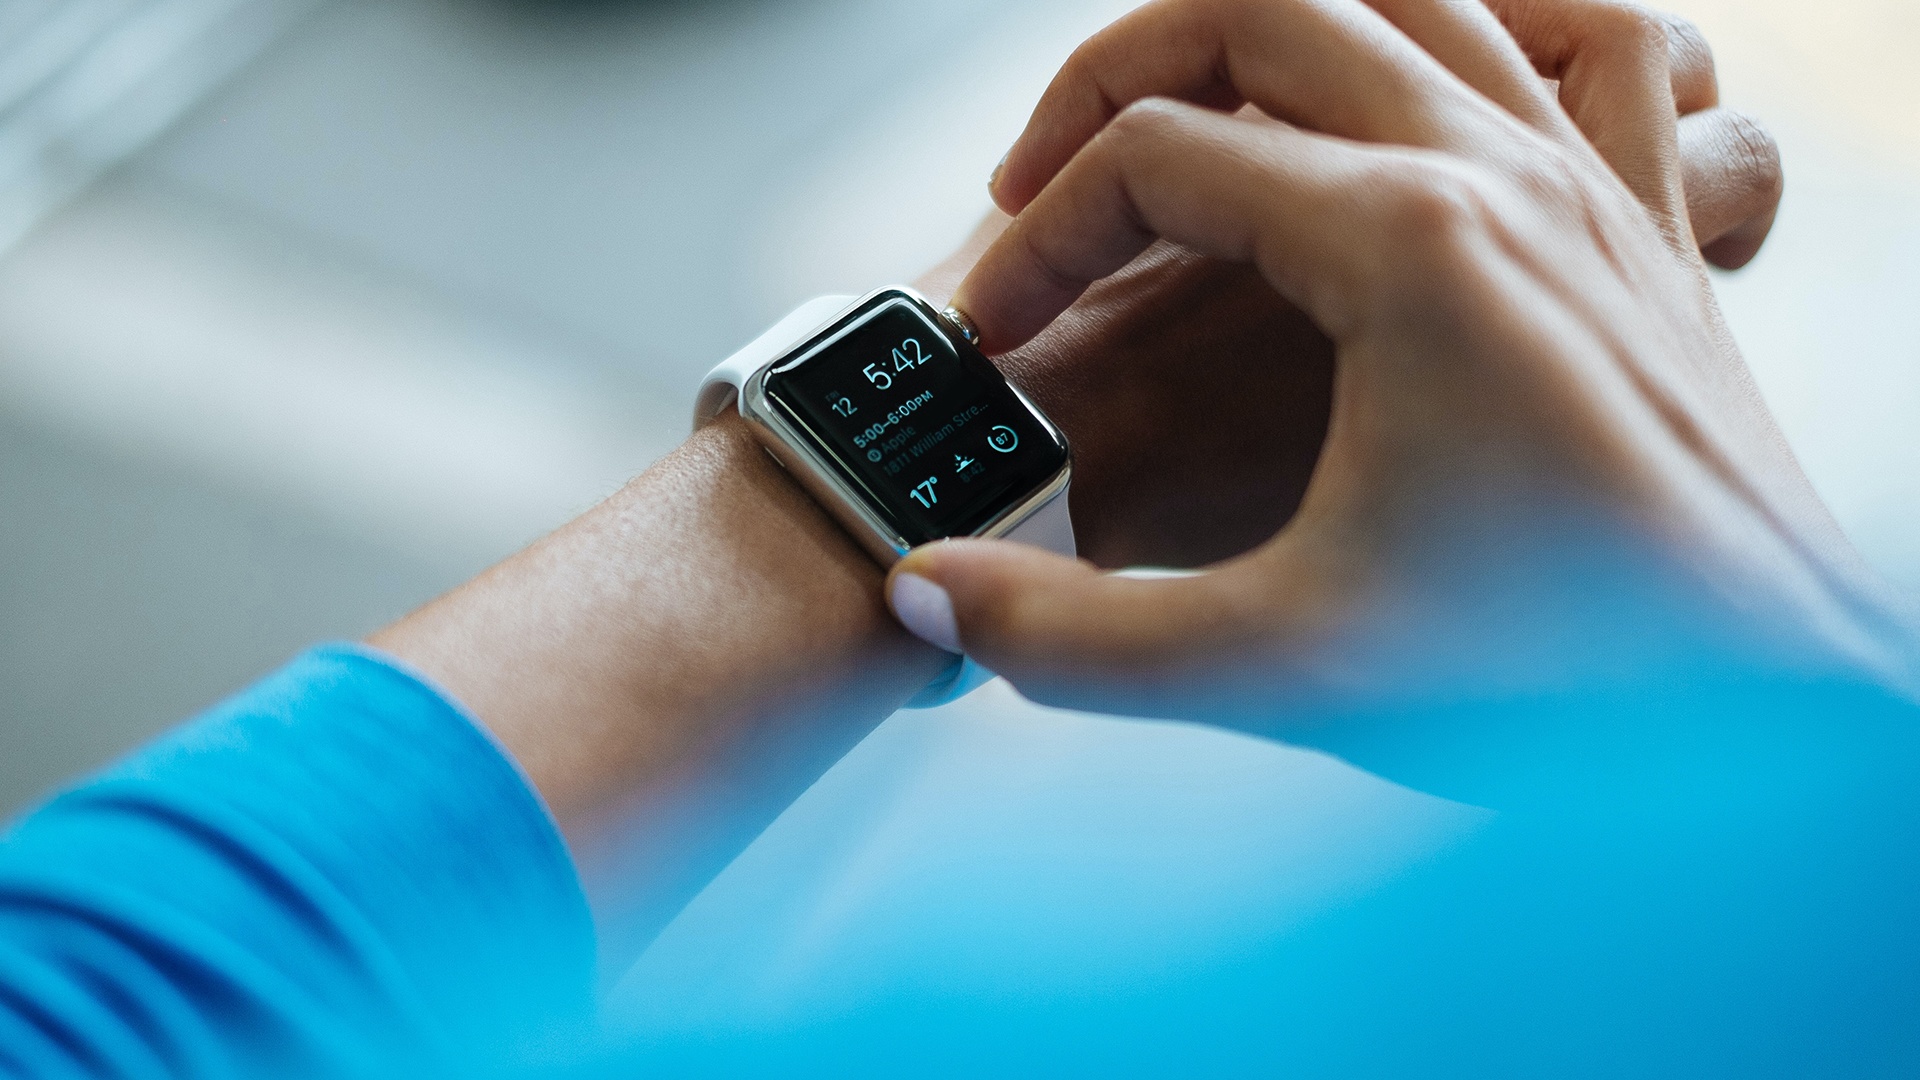 #Double Tap: Die neuesten Apple Watch-Modelle haben jetzt eine weitere nützliche Funktion, die ihr kennen solltet